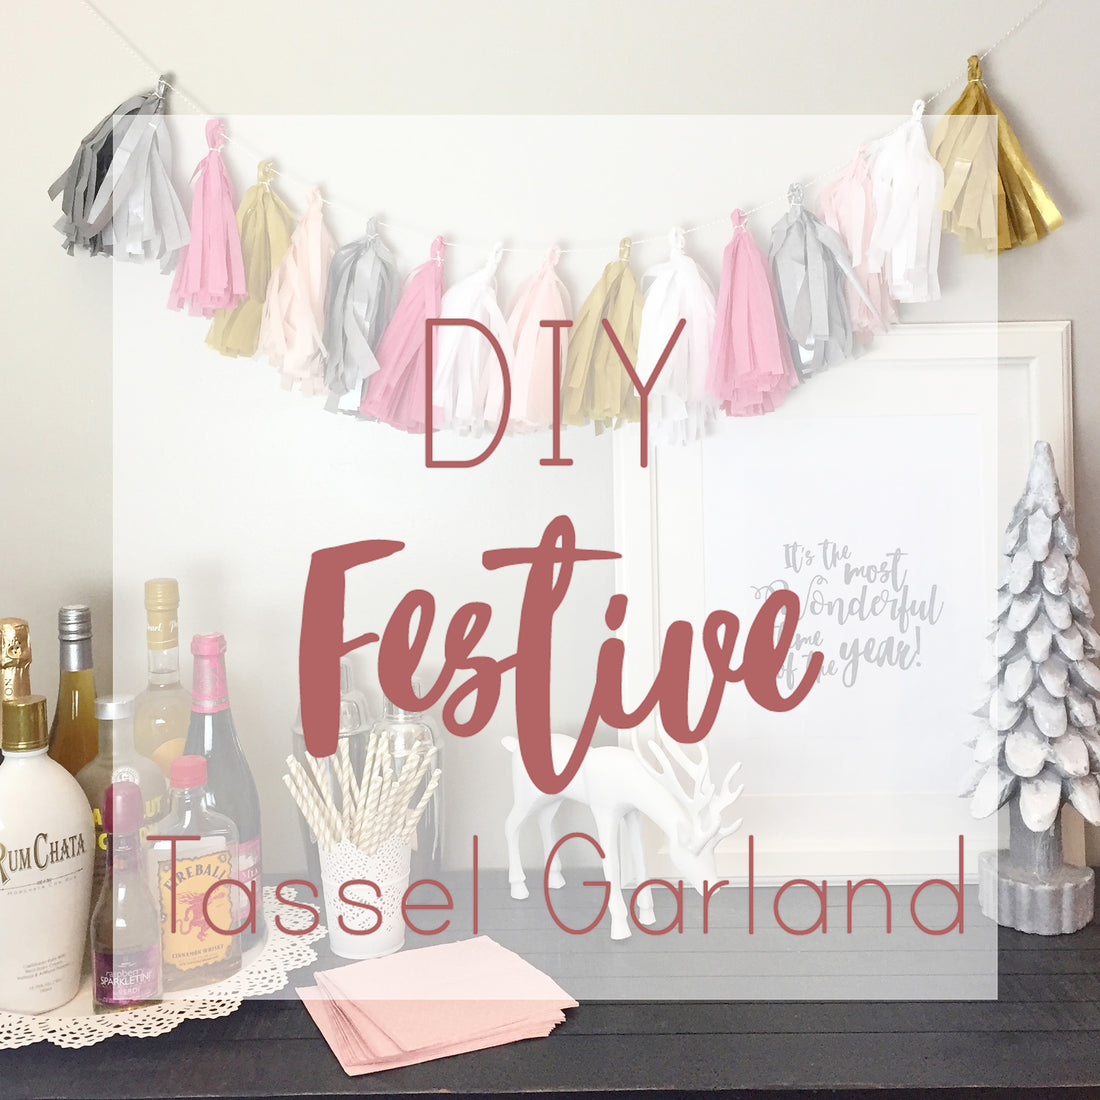 DIY Festive Tassel Garland